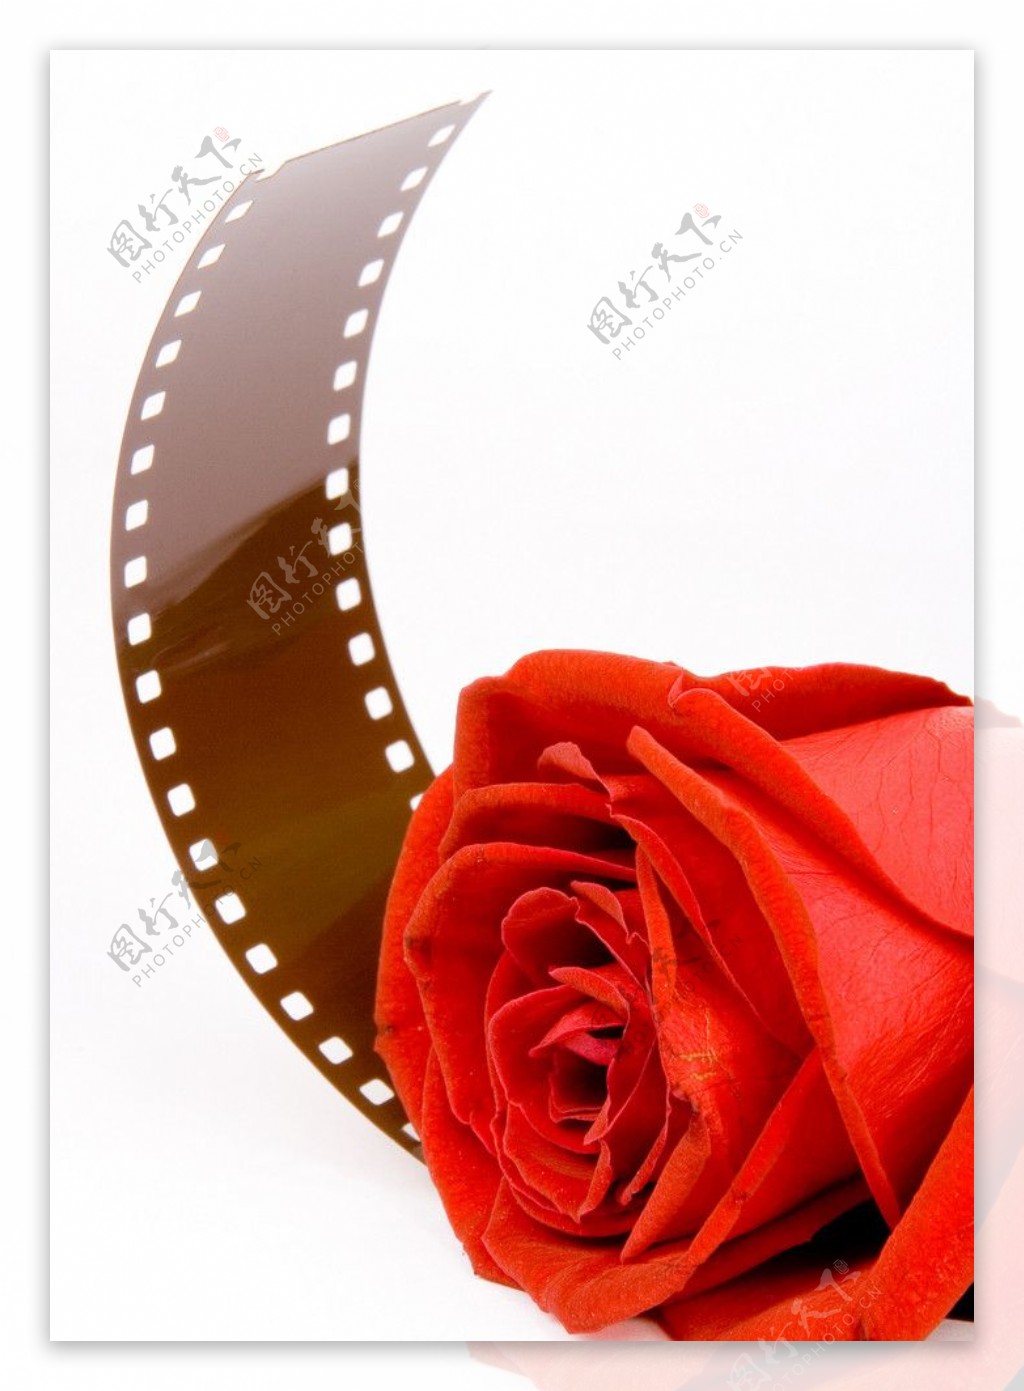 红玫瑰和电影带图片